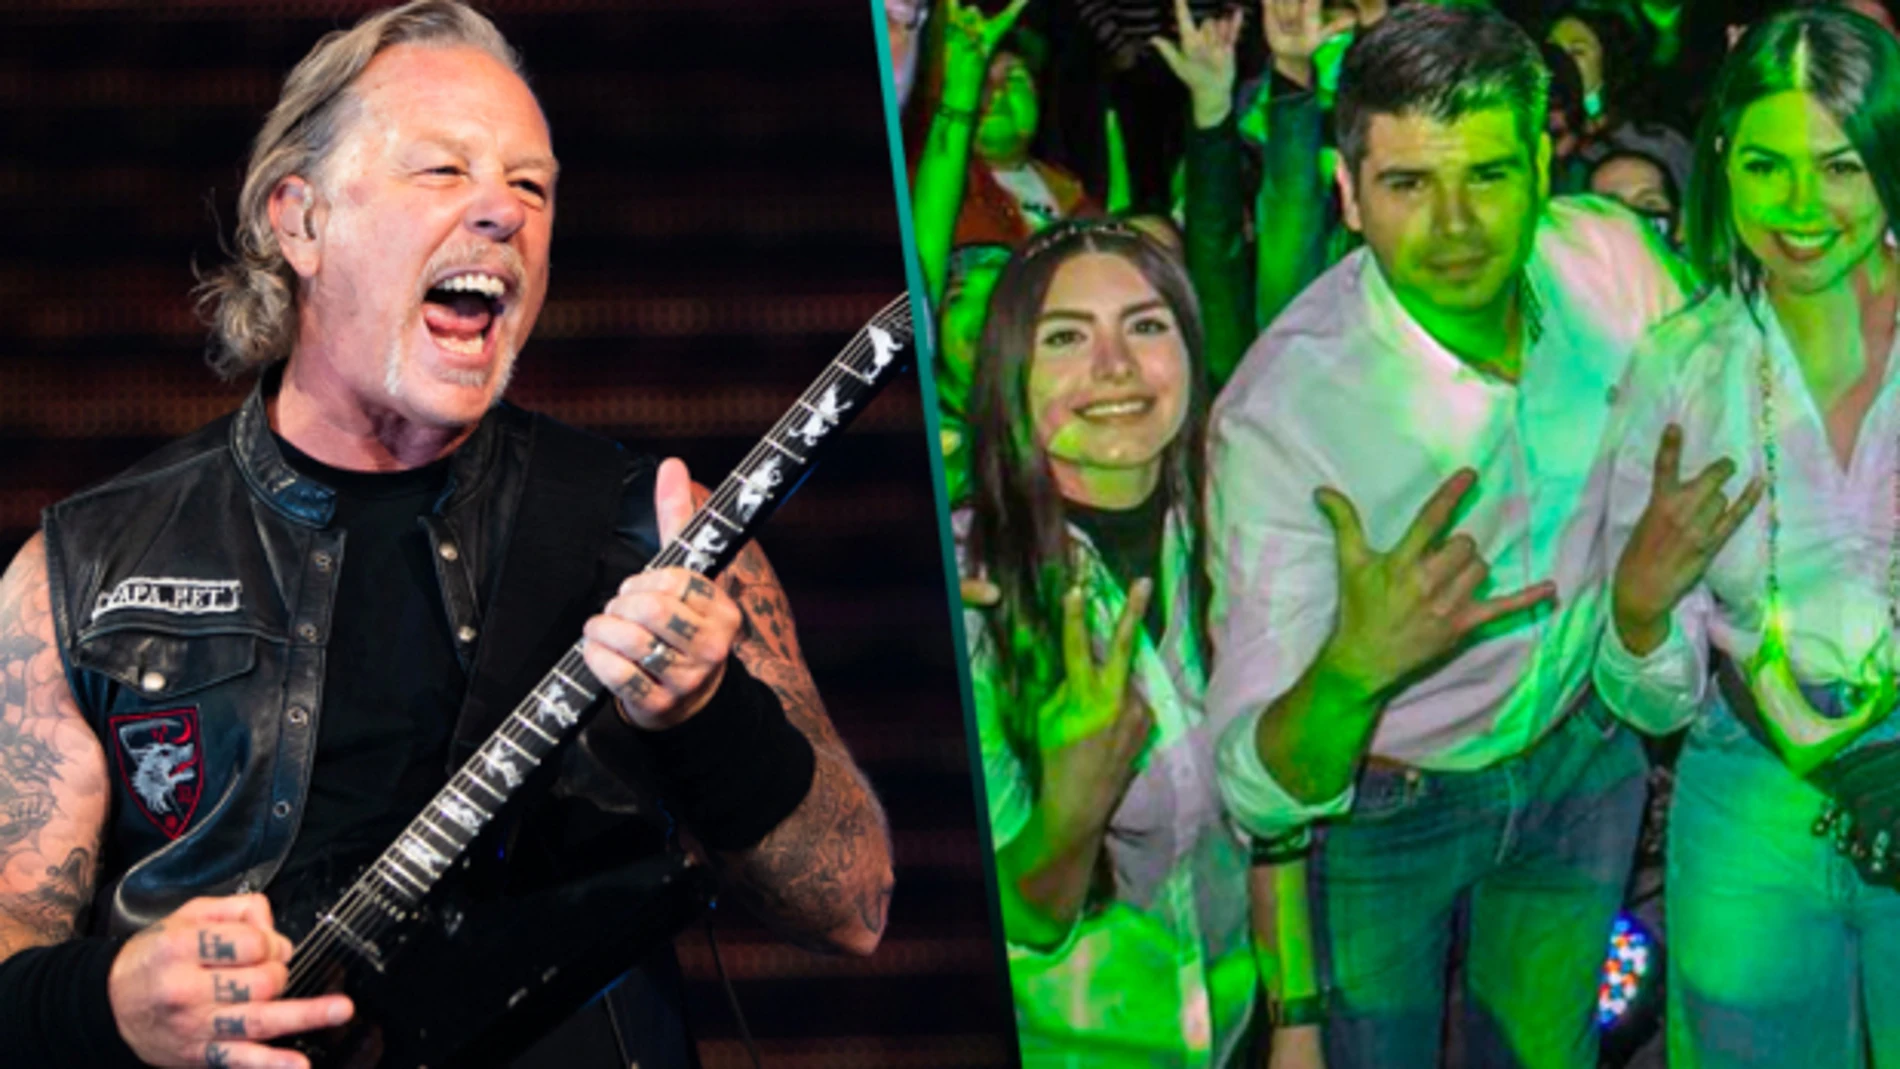 Un concierto de Metallica cuesta más de dos millones de dólares (más de 1,6 millones de euros), según informó el canal TV Azteca